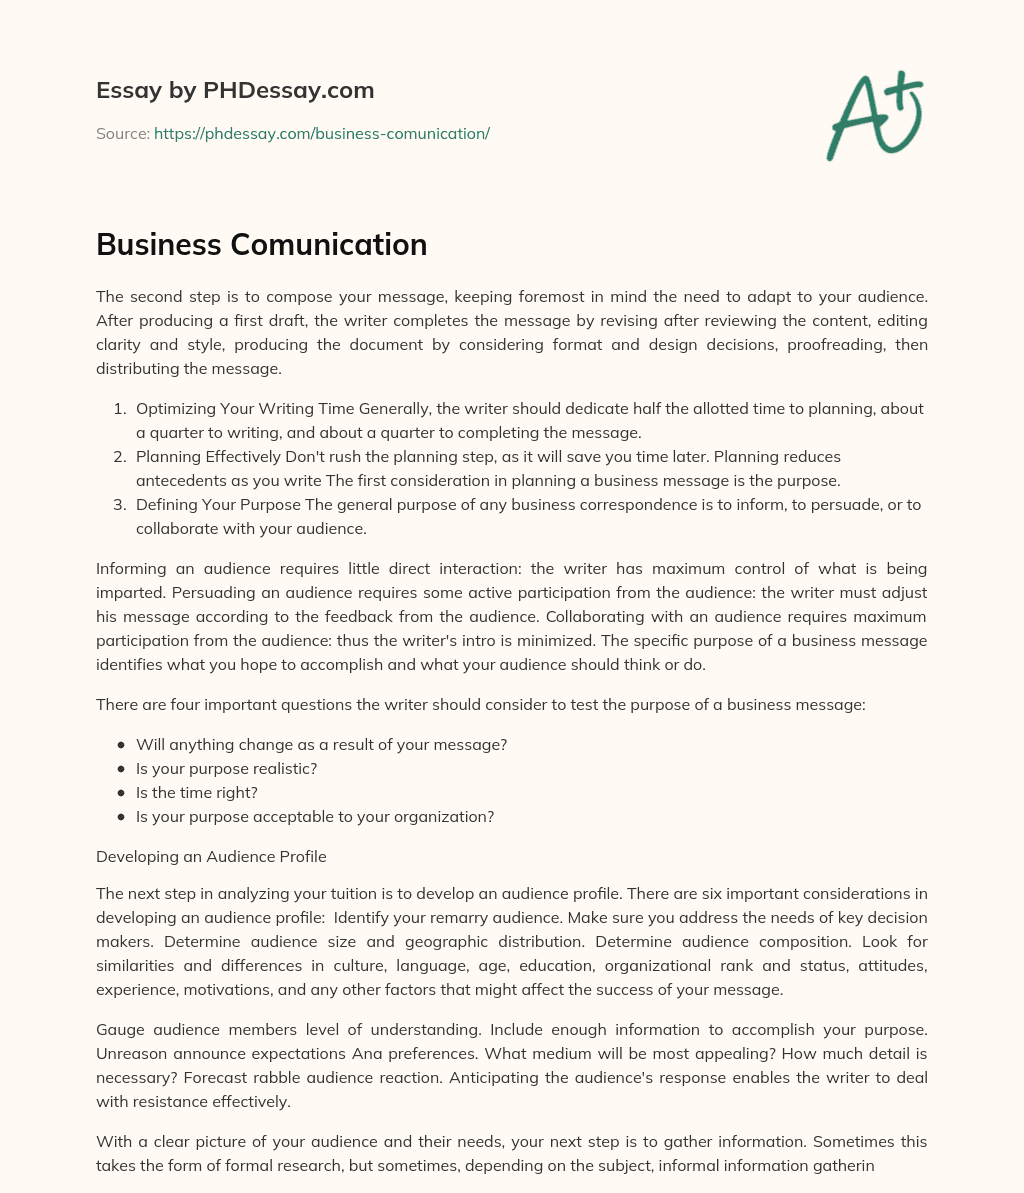 Business Comunication essay